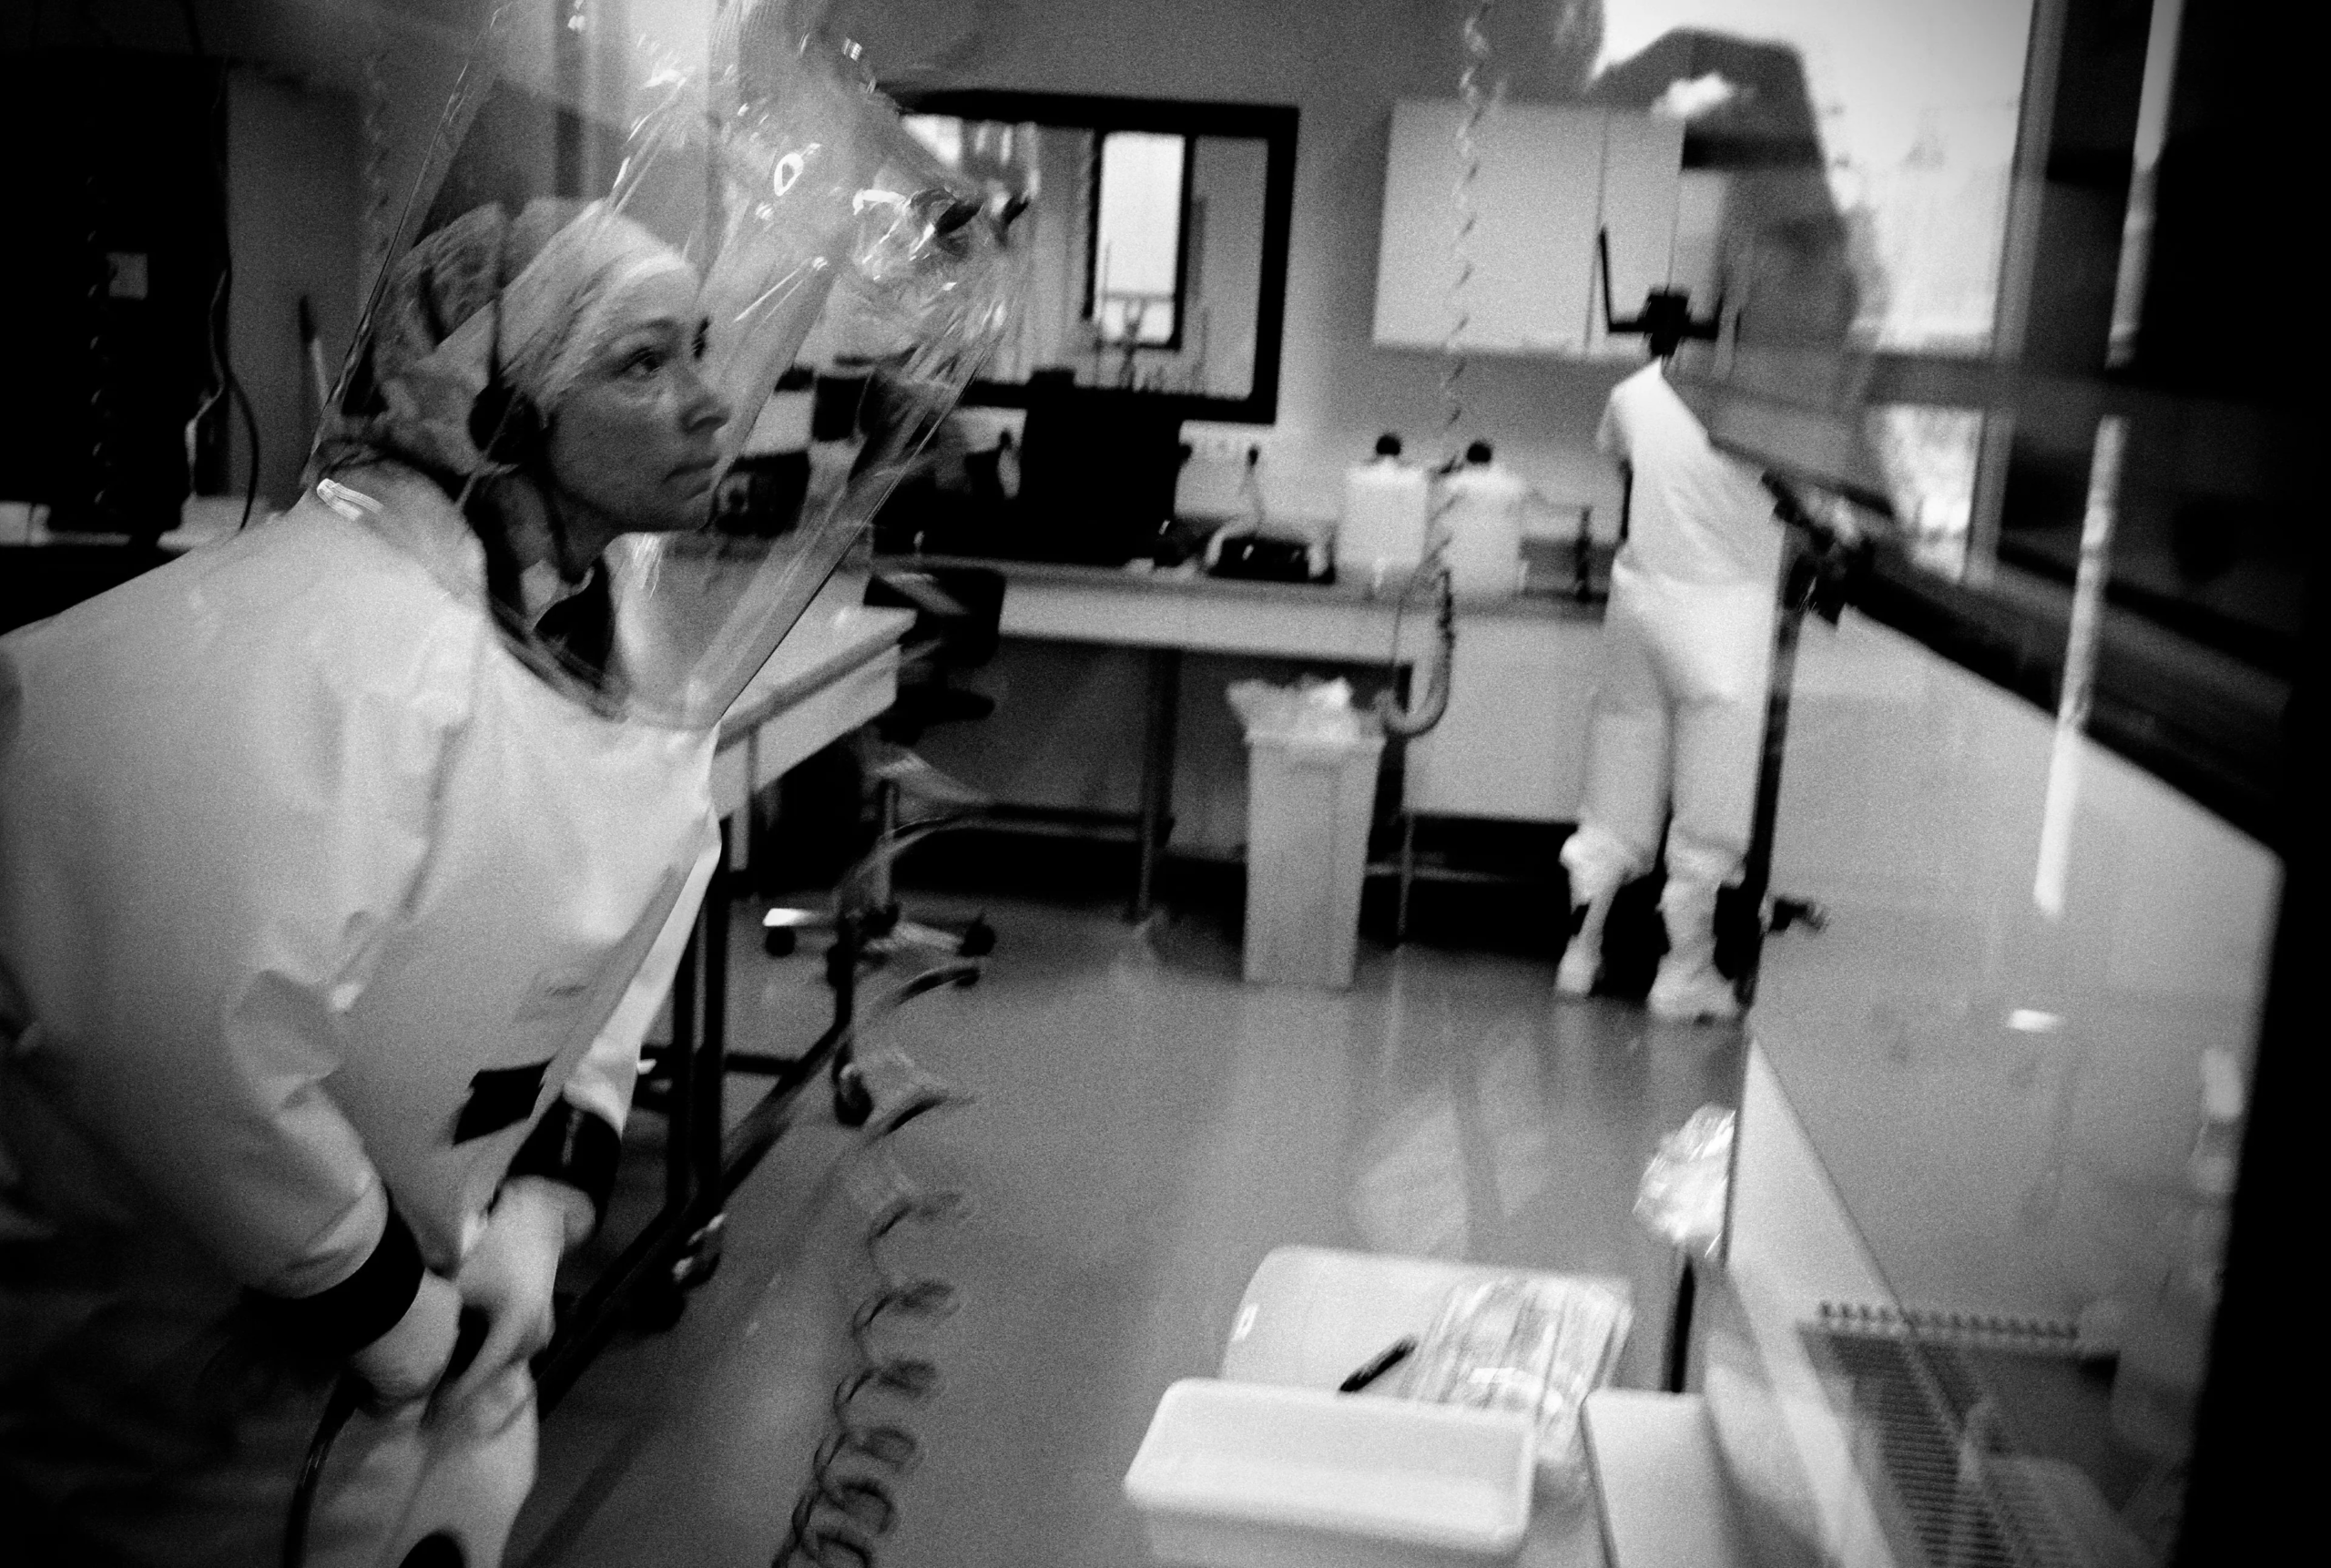 Các nhà nghiên cứu đang làm việc với virus trong phòng thí nghiệm P4 Jean Mérieux ở Lyon, Pháp, vào ngày 27/02/2008. P4 (Mầm bệnh loại 4) đề cập đến các vi sinh vật gây bệnh có nguy cơ gây tử vong cho nhân viên làm việc với chúng. Mần bệnh loại 4 đặc trưng bởi tỷ lệ tử vong rất cao trong các trường hợp nhiễm trùng, ví dụ như bệnh đậu mùa. (Ảnh: JEAN-PHILIPPE KSIAZEK/AFP /Getty Images)